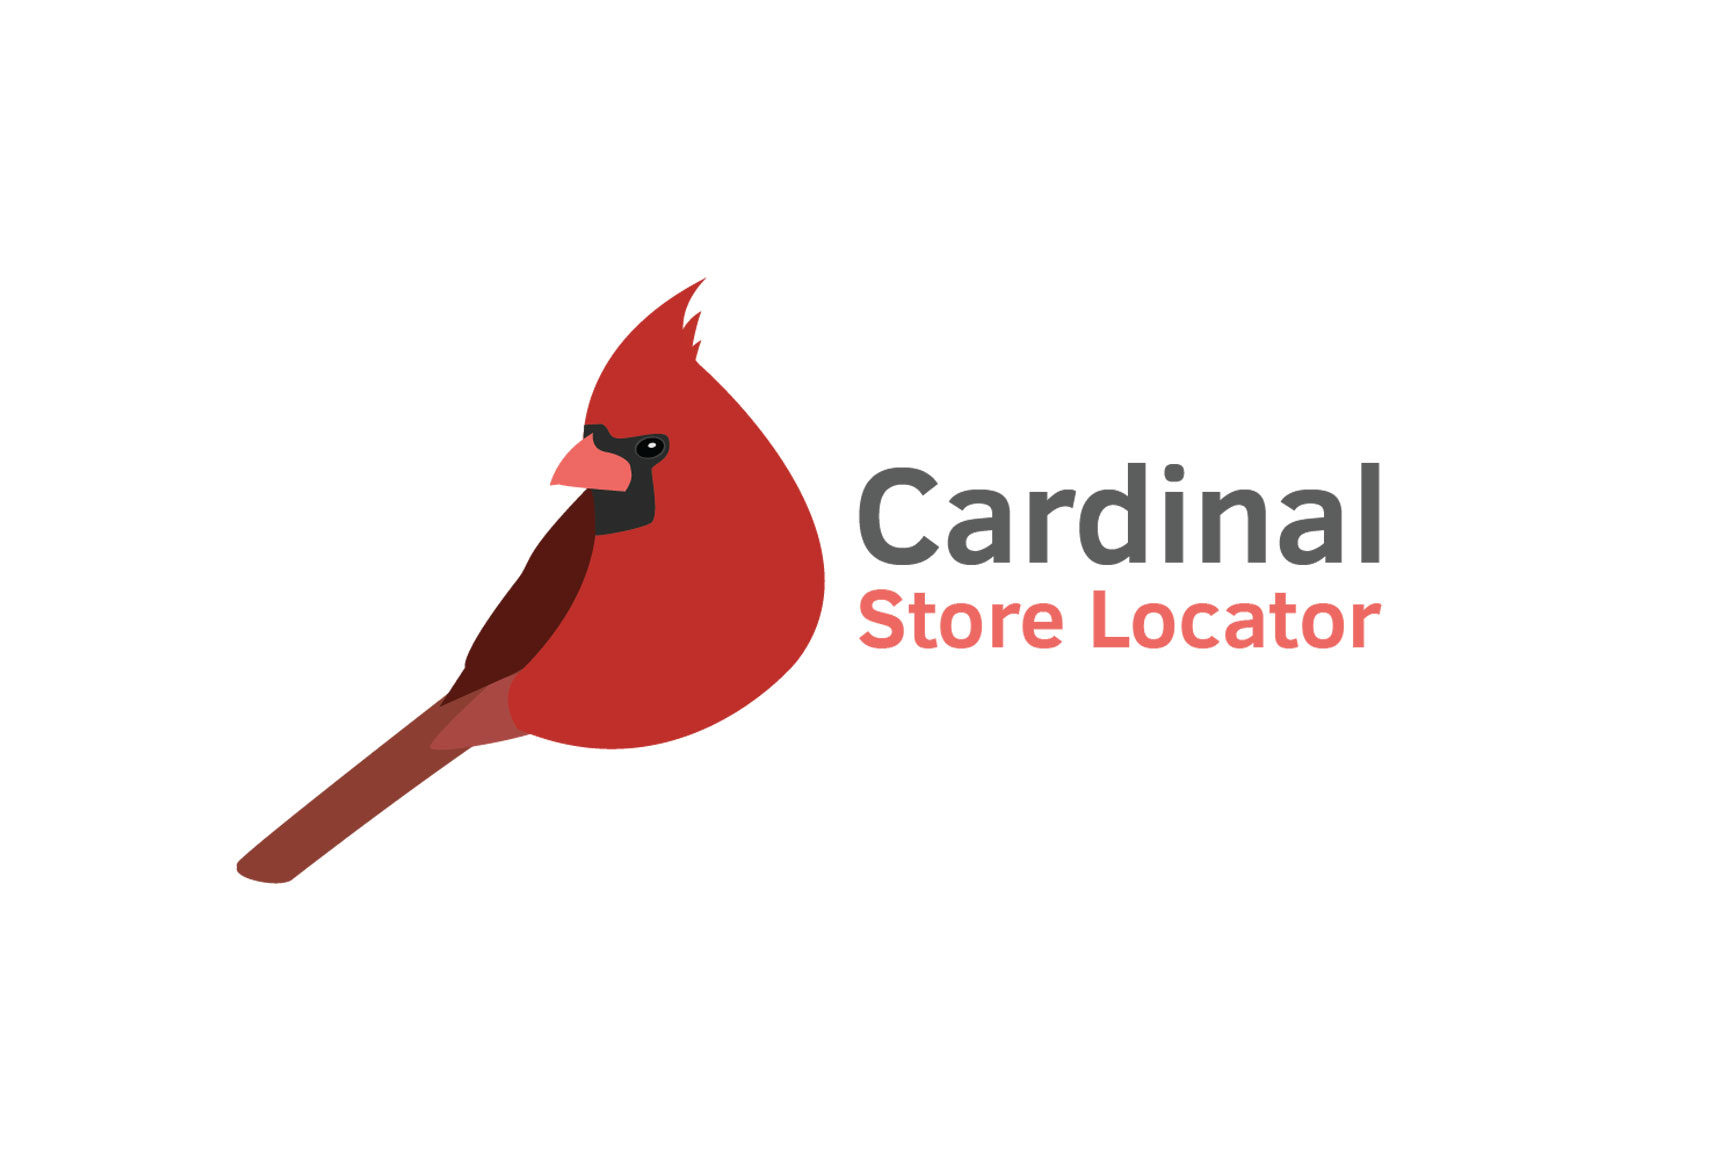 Cardinal Store Locator masthead image